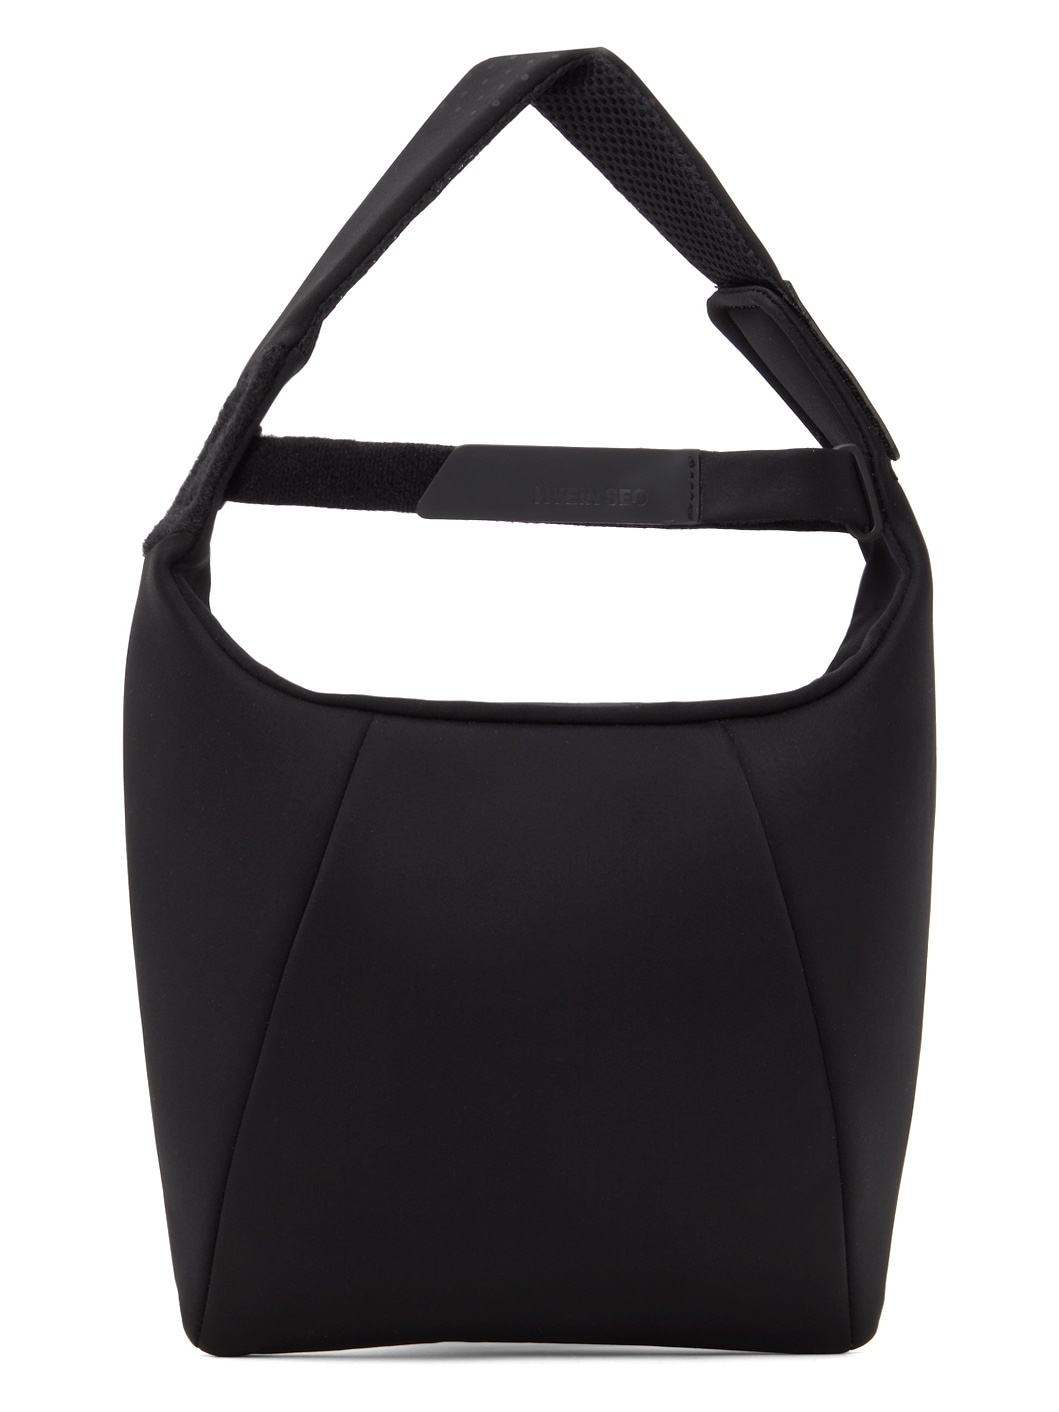 Black Sport Bag - 1